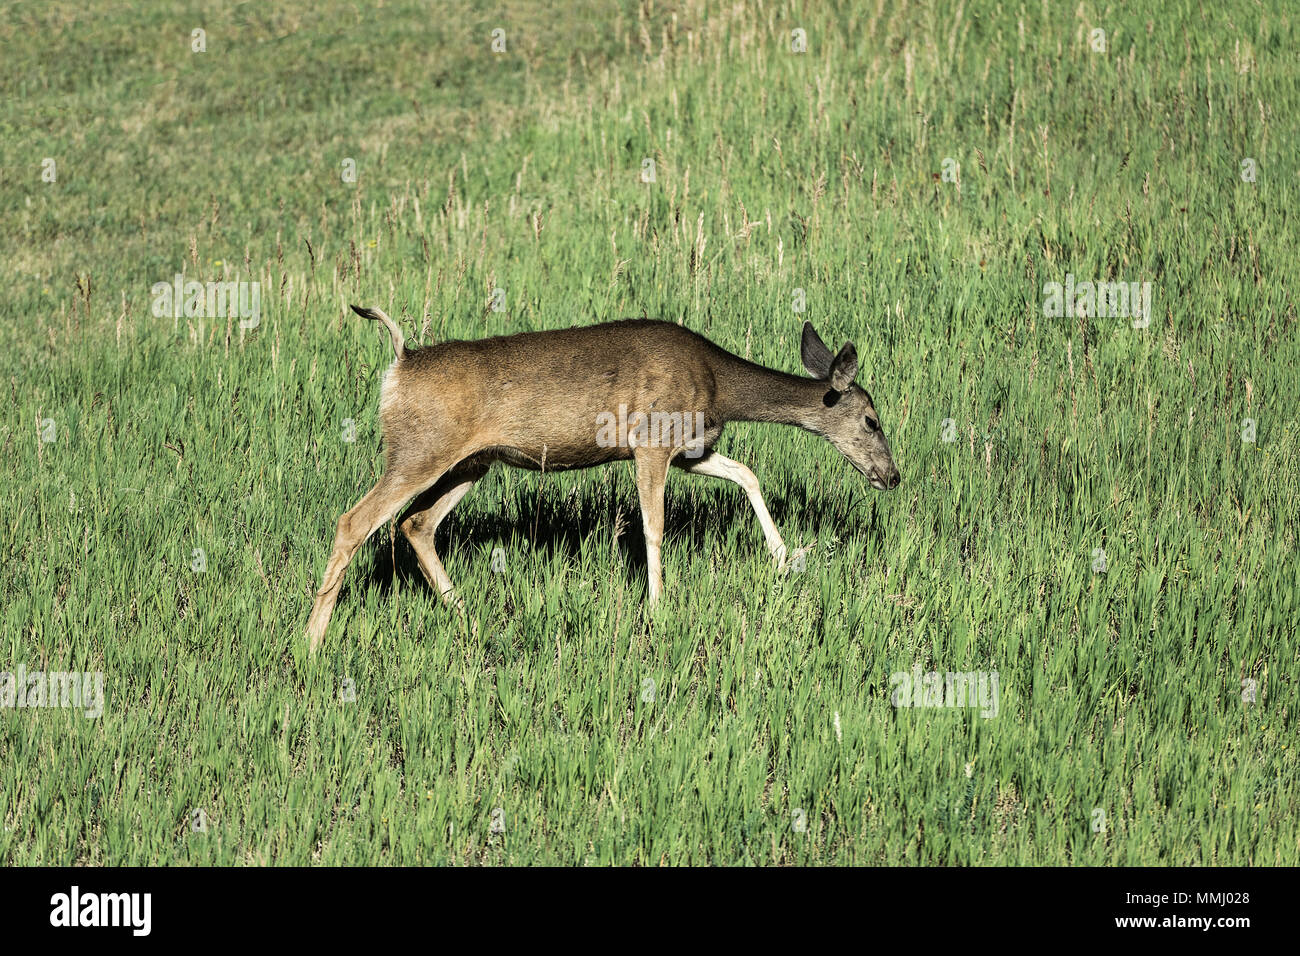 Ciervo solitario buscar alimento, Golden, Colorado, EE.UU. Foto de stock